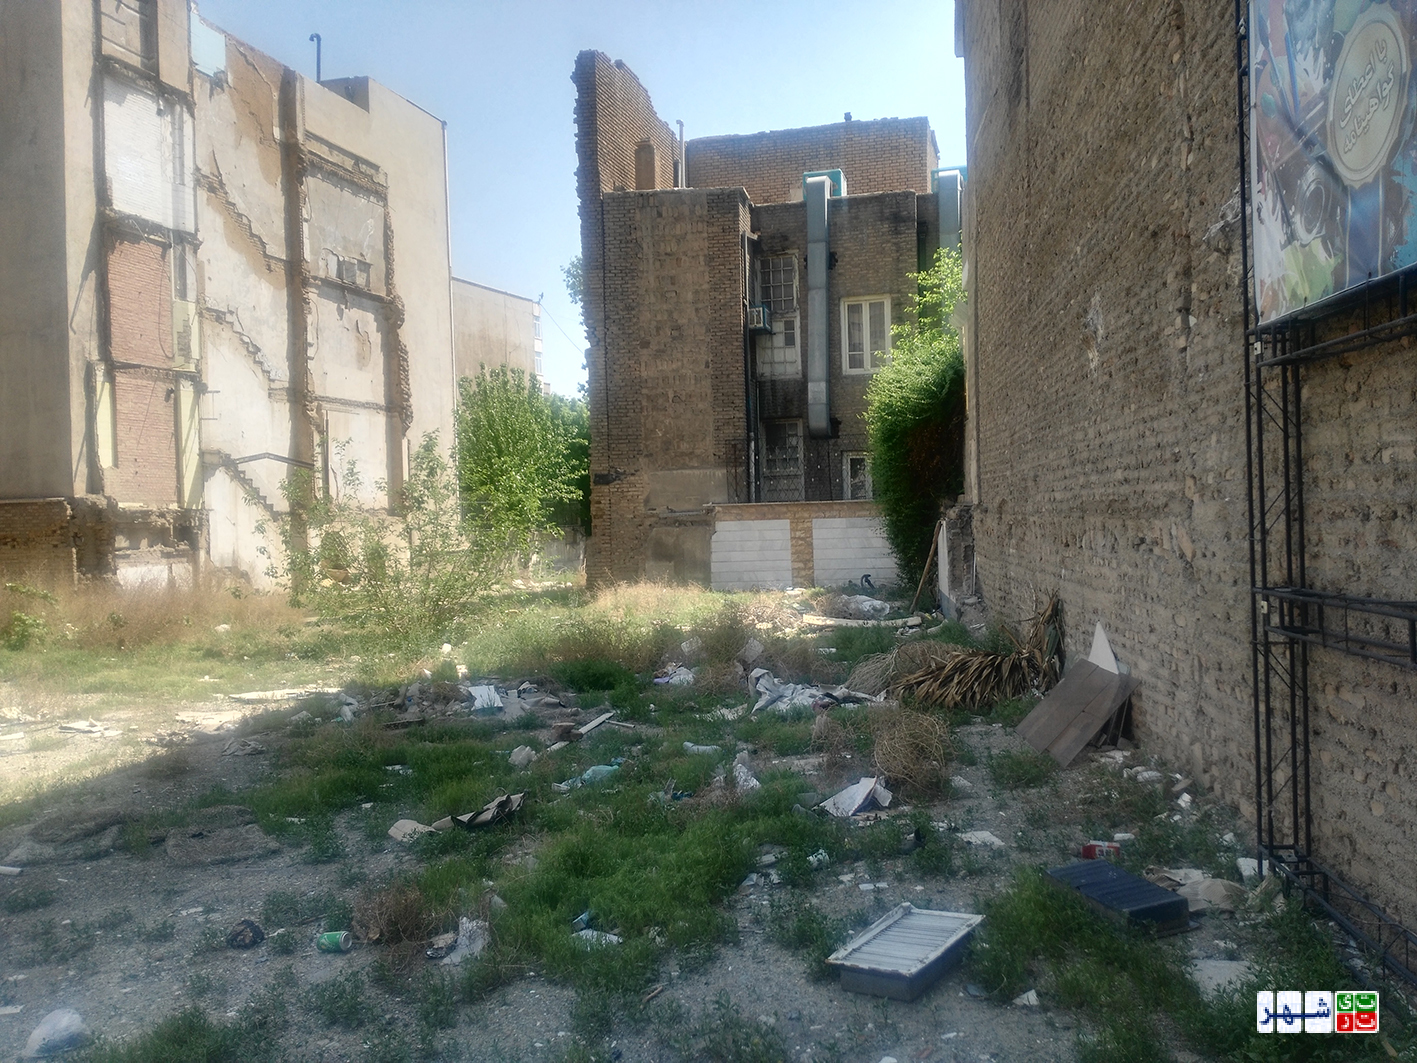 کاهش کیفیت زندگی در محله های منطقه 6 به دلیل اجرای طرح توسعه پردیس دانشگاه تهران / شهر دانش این روزها بلای ساکنان محله وصال شده است